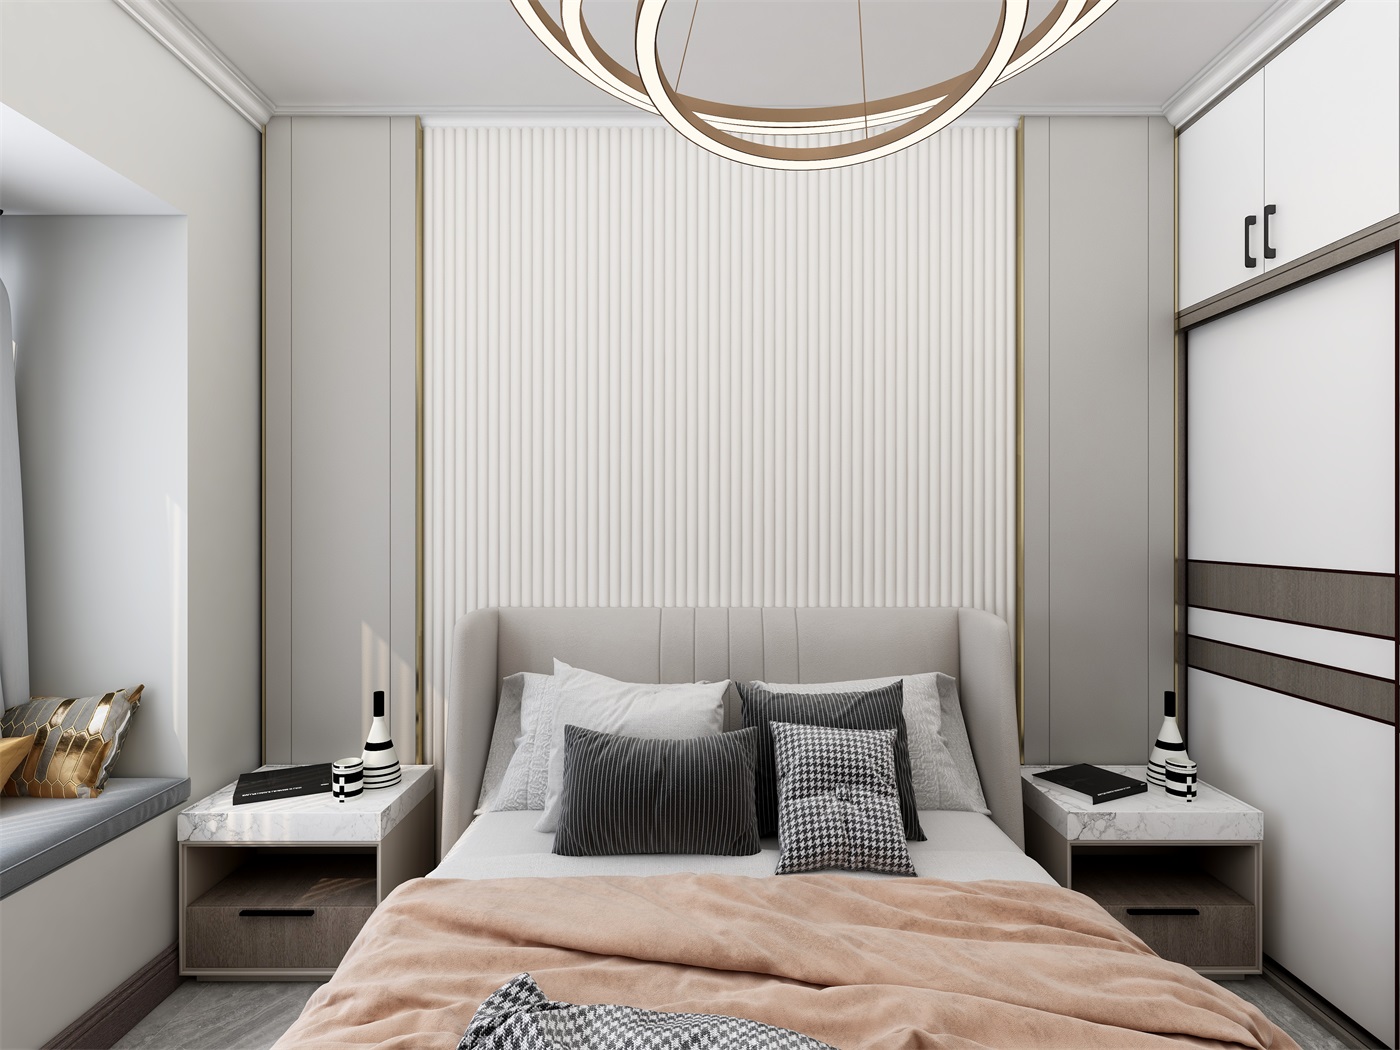 空间背景墙层次分明，暖色床品轻奢优雅，让整个区域充满低调奢华的高档感感。